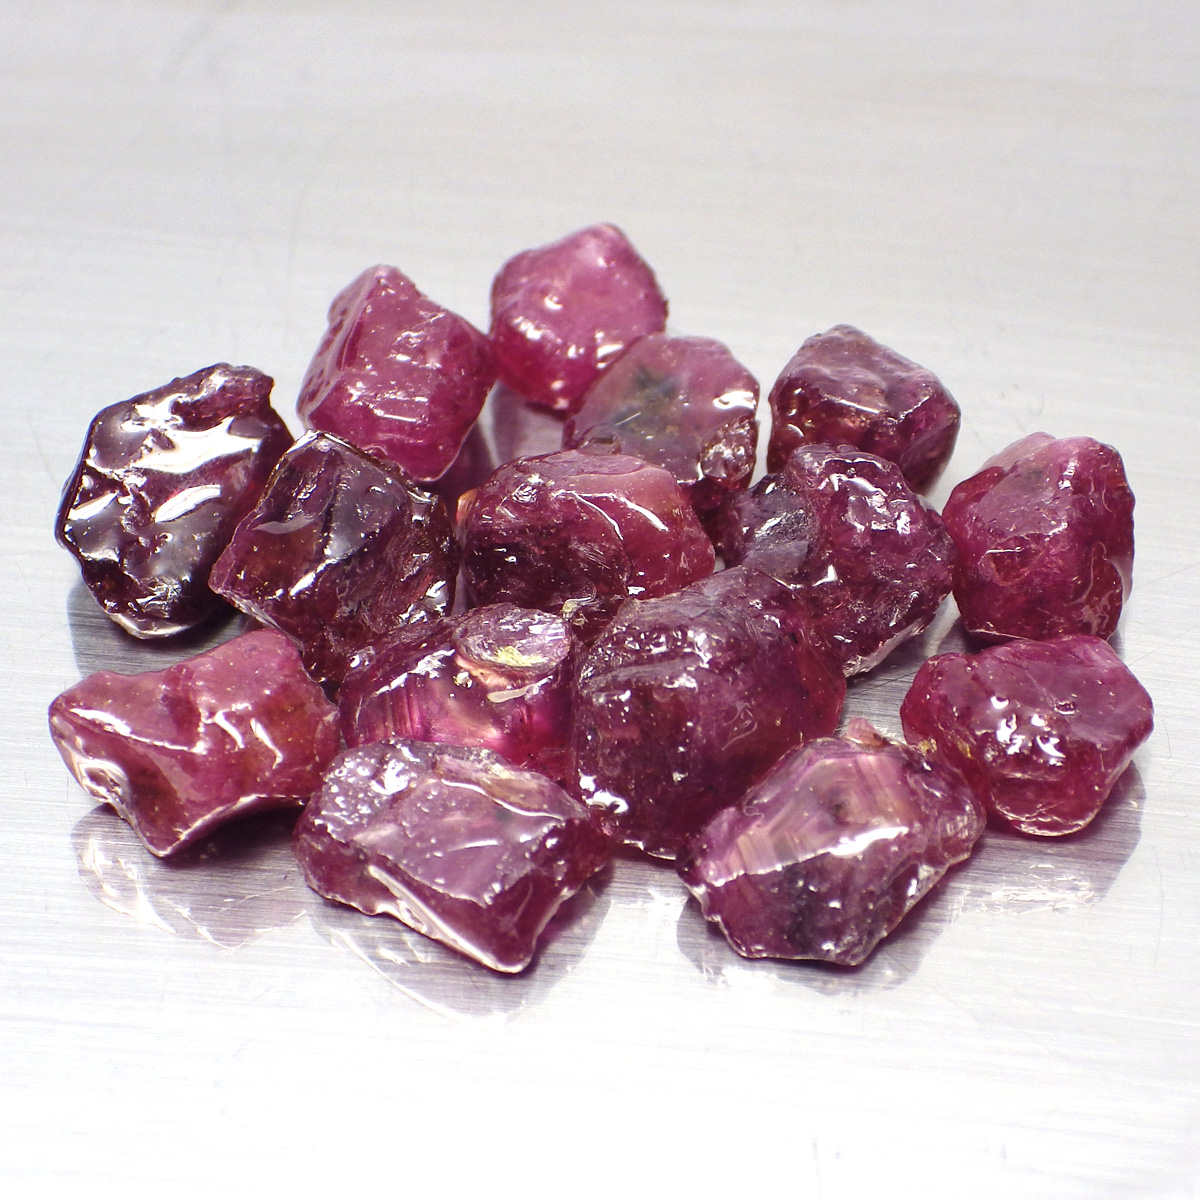 พลอย ก้อน รูบี้ ทับทิม สตาร์ เผาใหม่ ธรรมชาติ แท้ ( Natural Heated Star Ruby ) หนักรวม 50 กะรัต